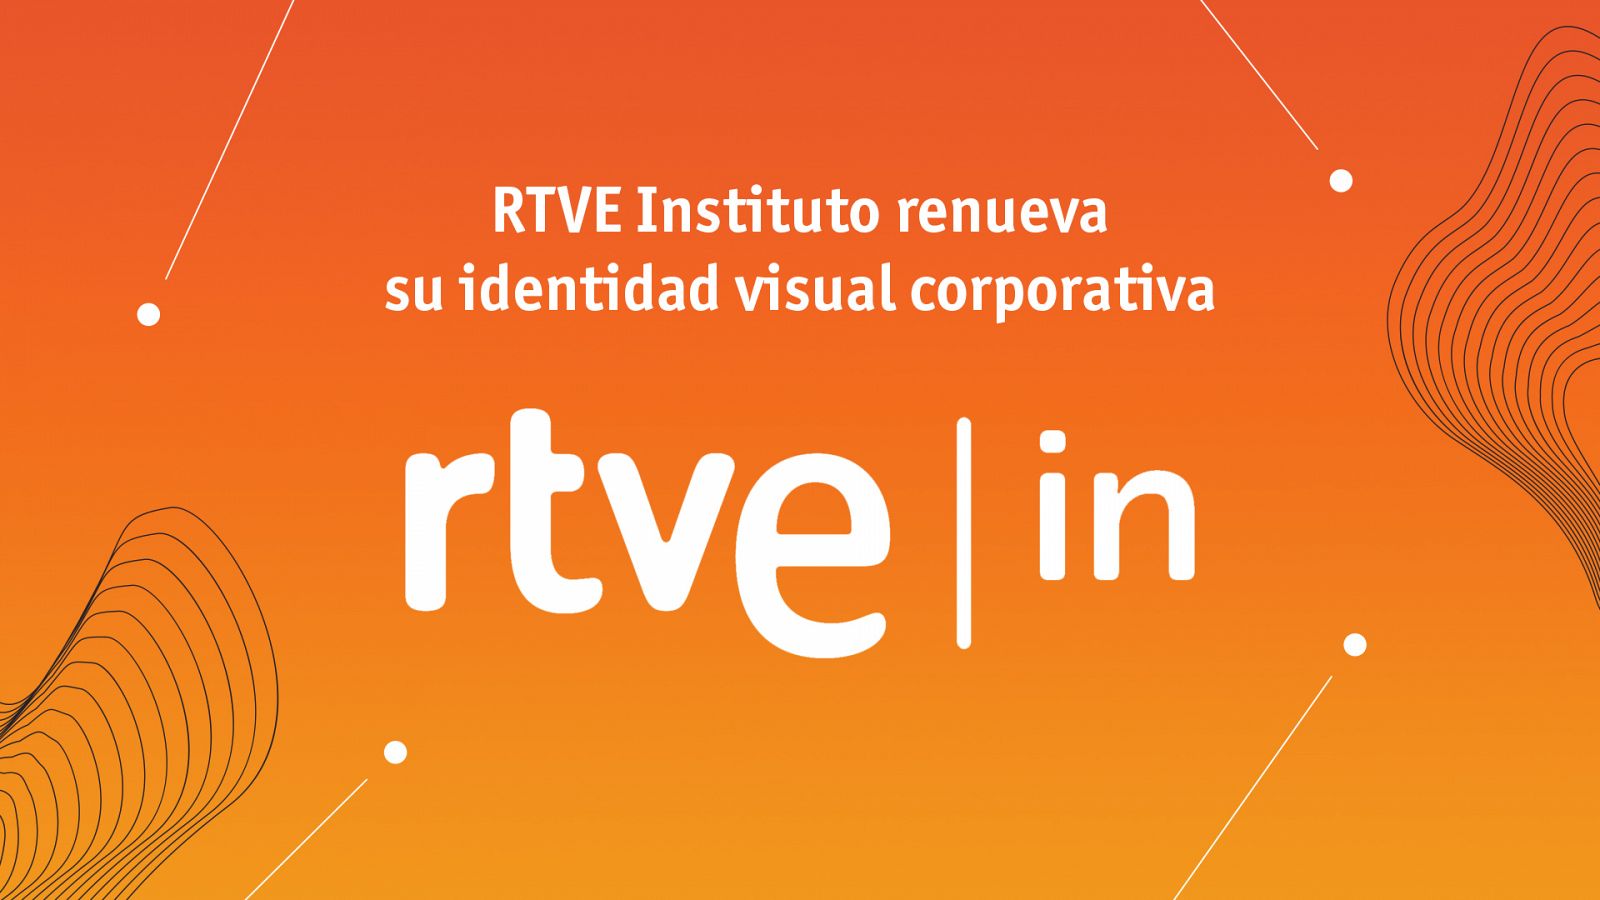 RTVE Instituto nueva idendidad